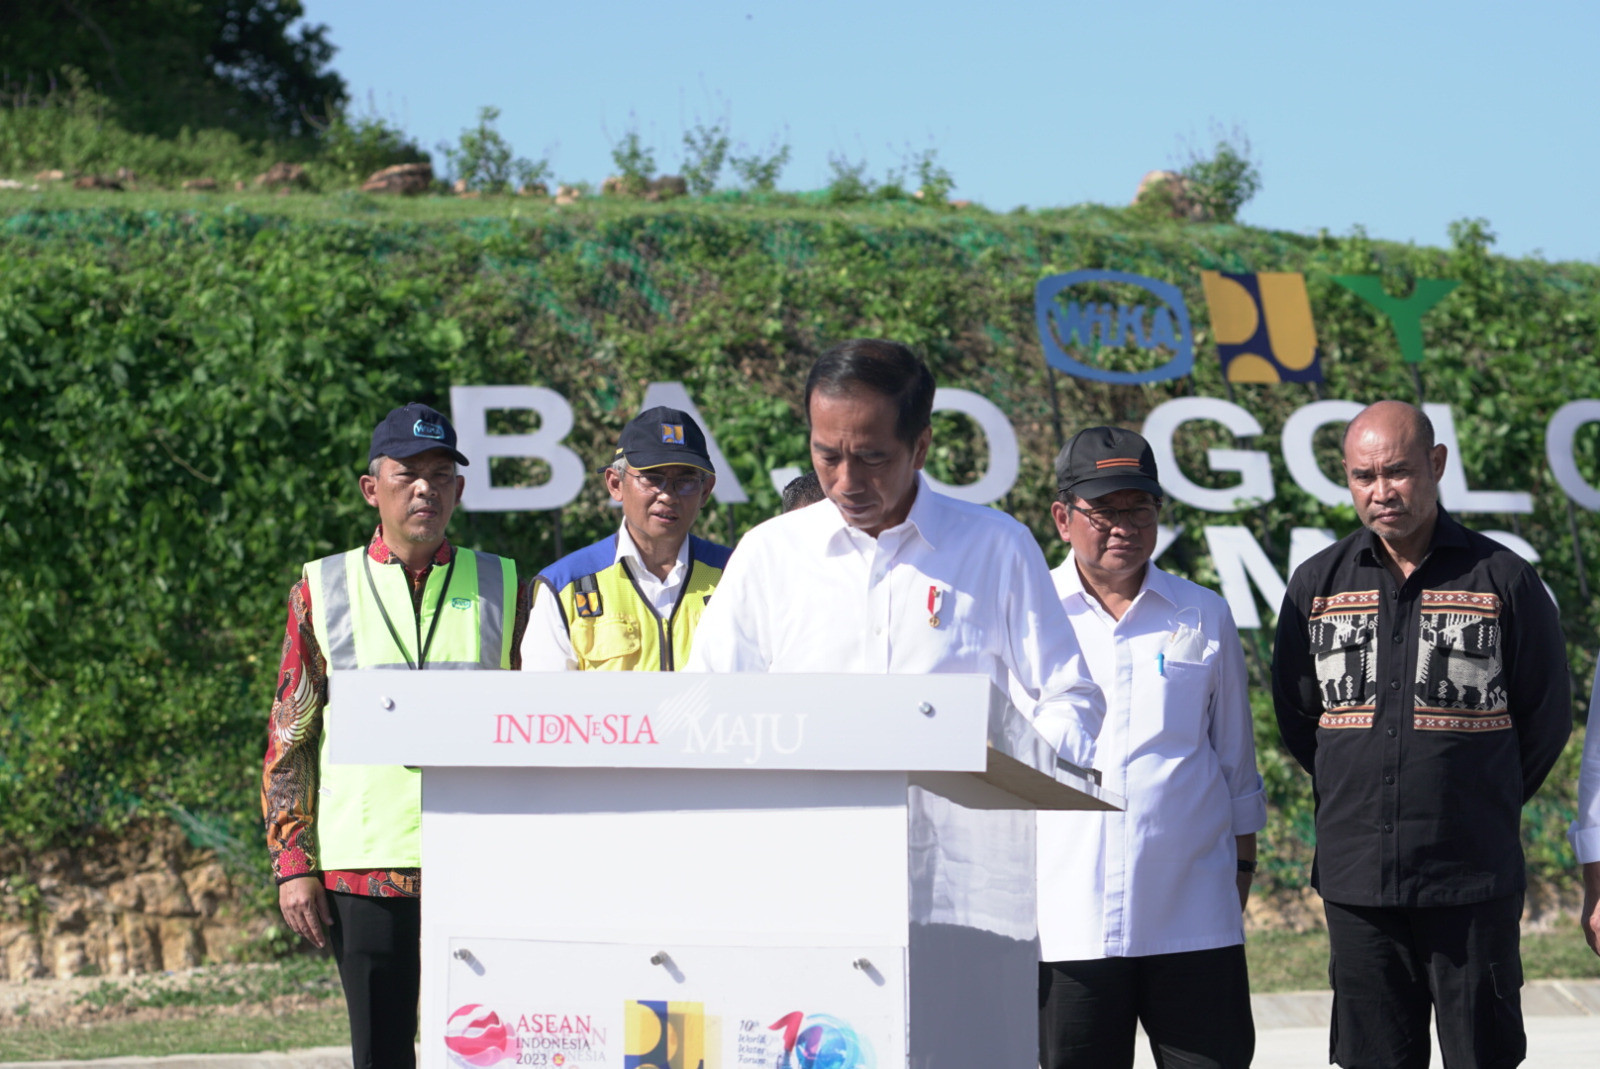 Presiden RI Joko Widodo Resmikan Jalan dan Jembatan Labuan Bajo - Tana Mori Karya WIKA Image